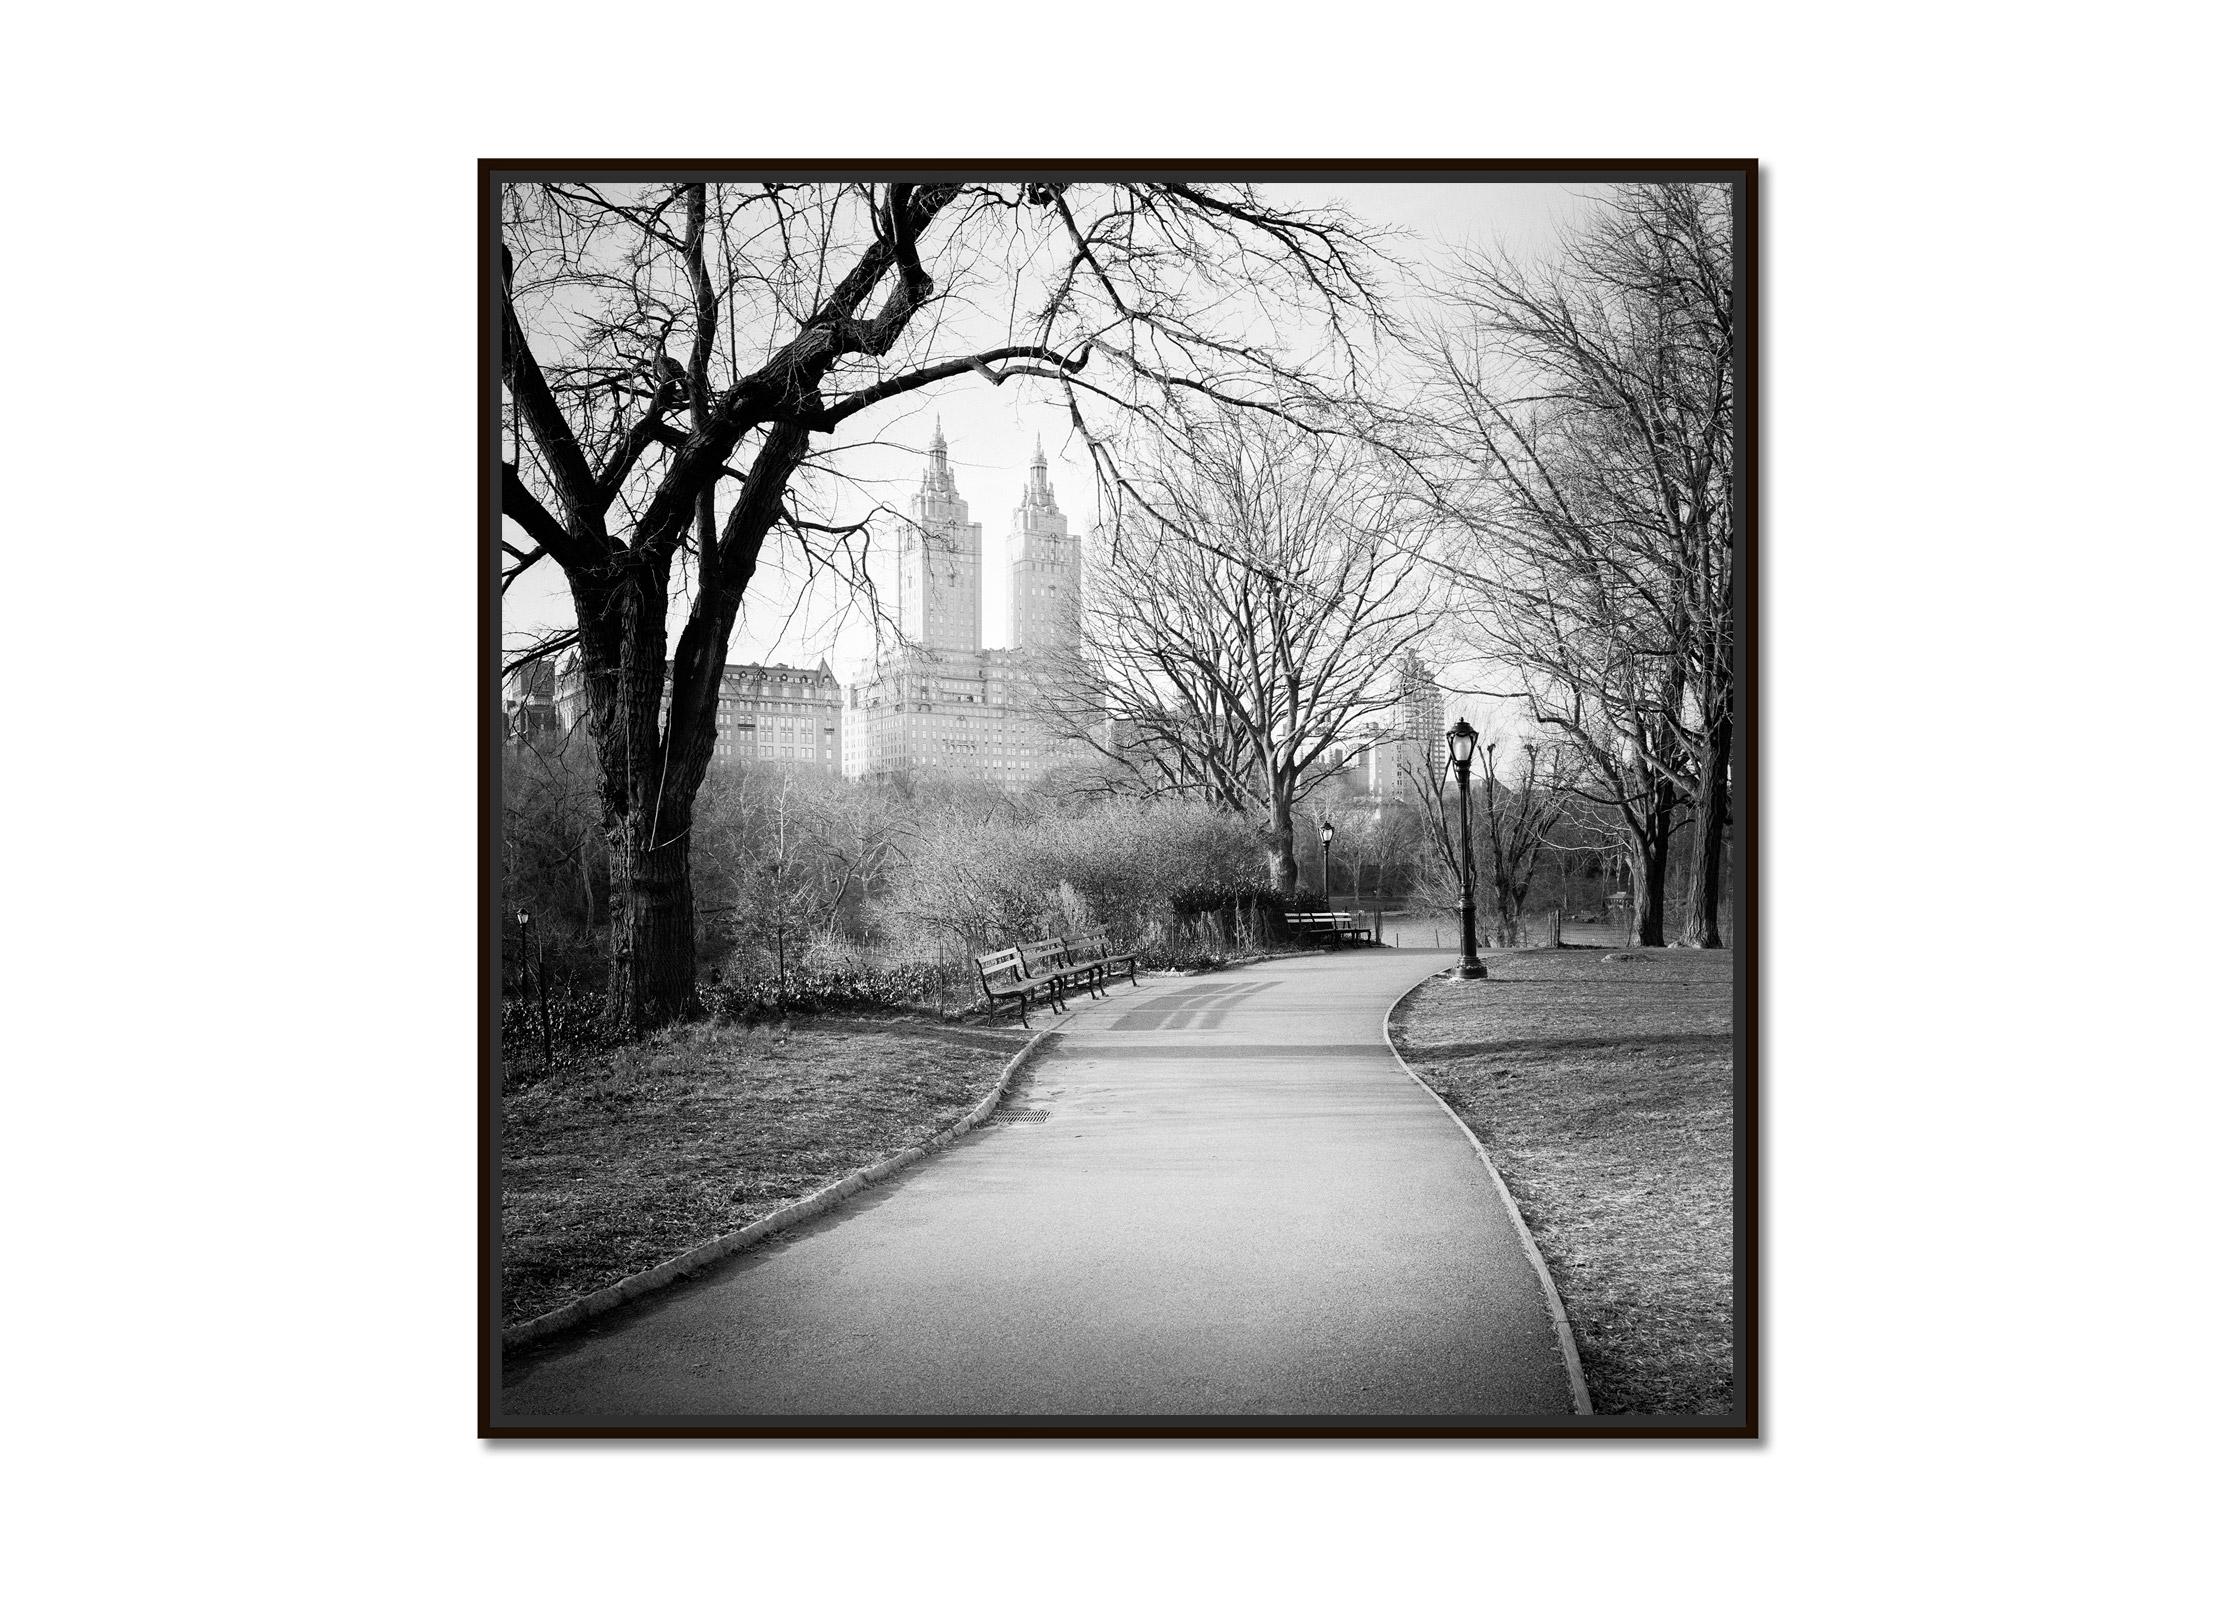 The San Remo, Central Park, New York City, photographie de paysage urbain en noir et blanc - Photograph de Gerald Berghammer